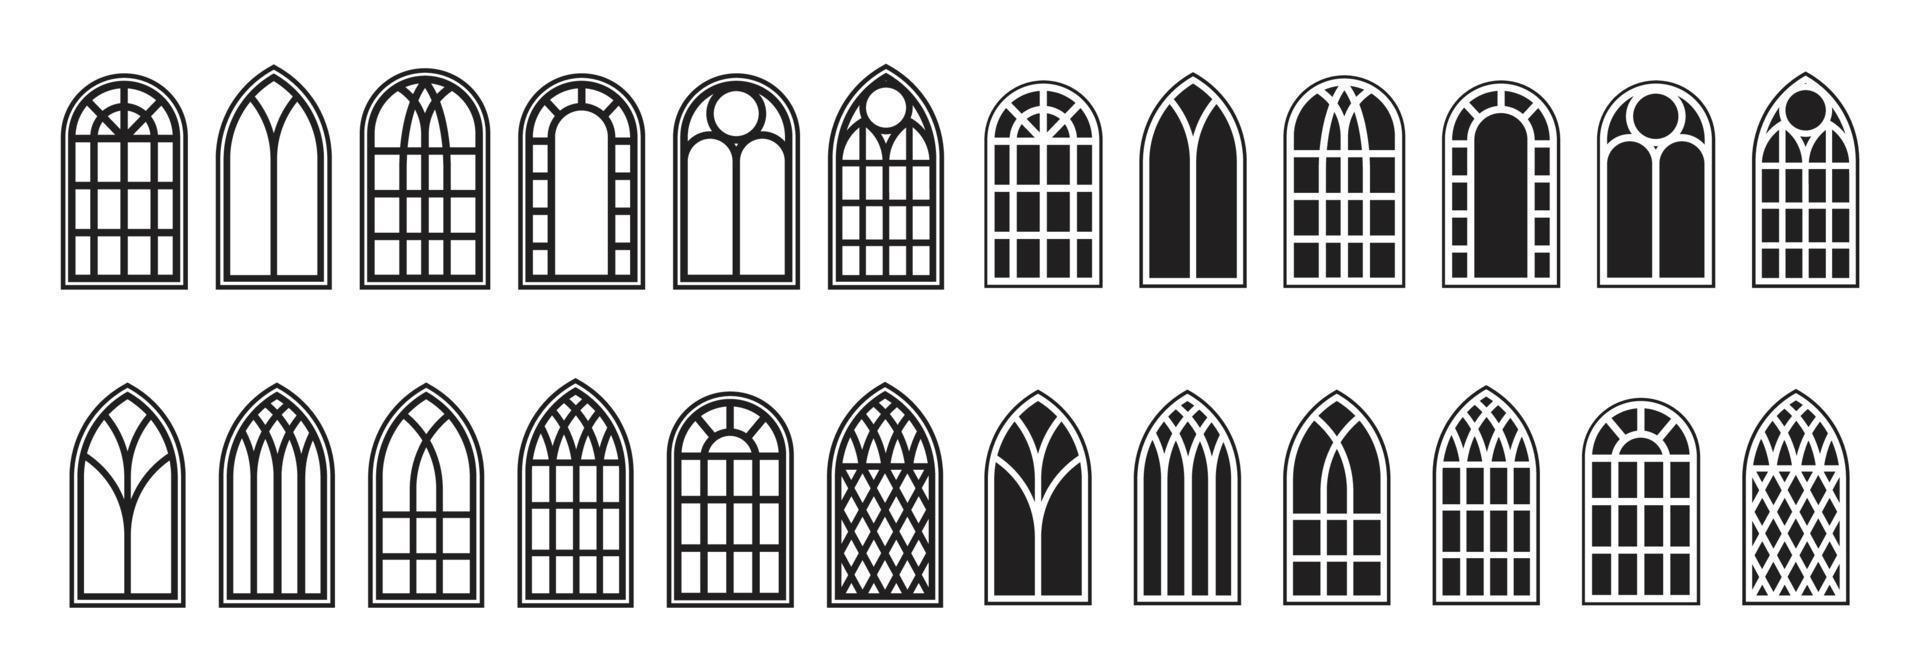 gotische ramen omtrek set. silhouet van vintage gebrandschilderd glas kerk frames. element van de traditionele Europese architectuur. vector illustratie